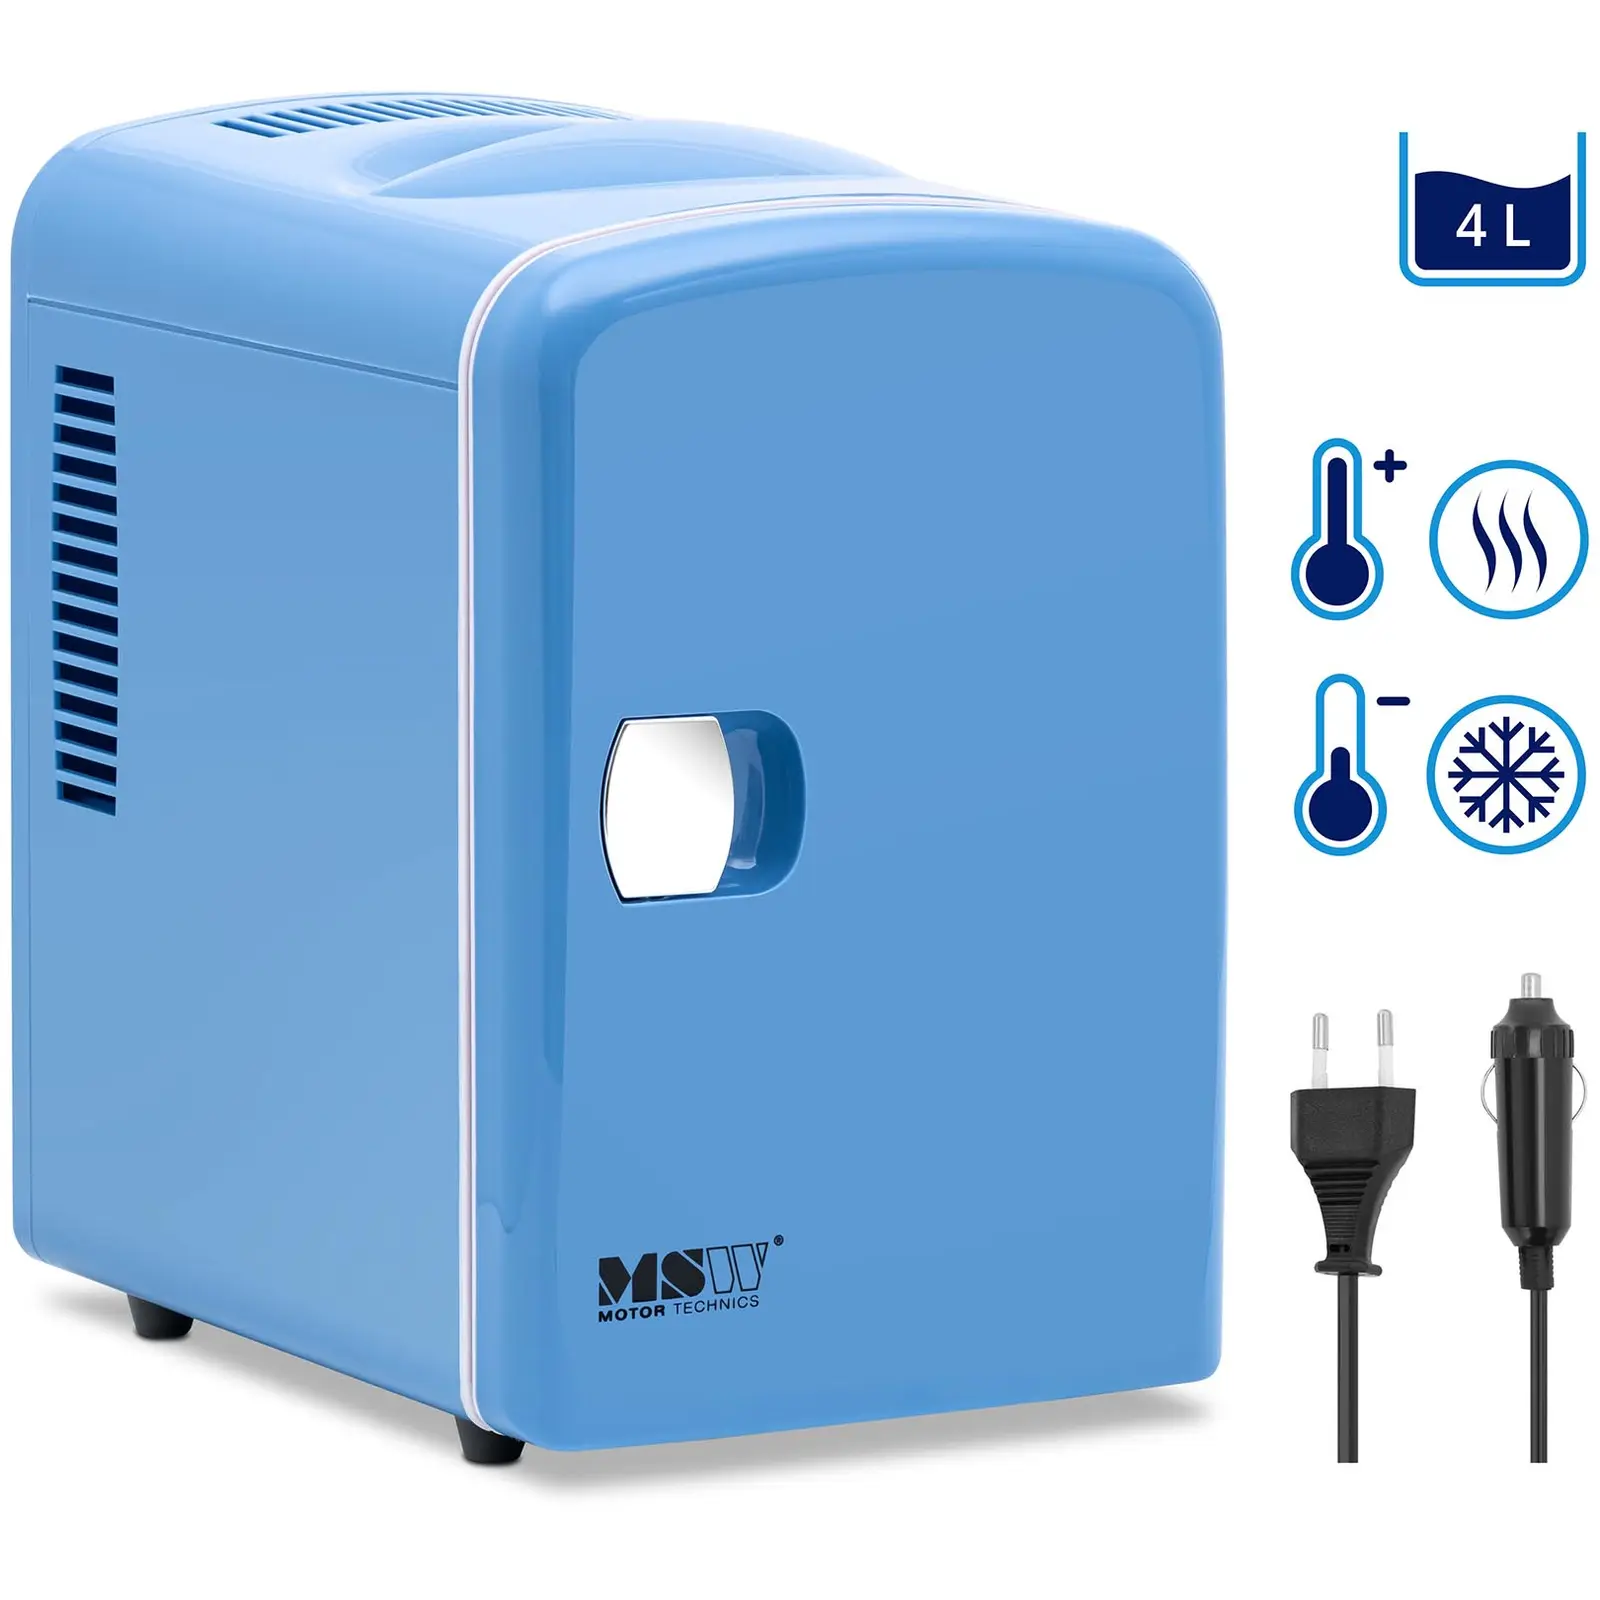 Mini hladilnik 12 V / 230 V - aparat 2 v 1 s funkcijo ohranjanja toplote - 4 L - Modra